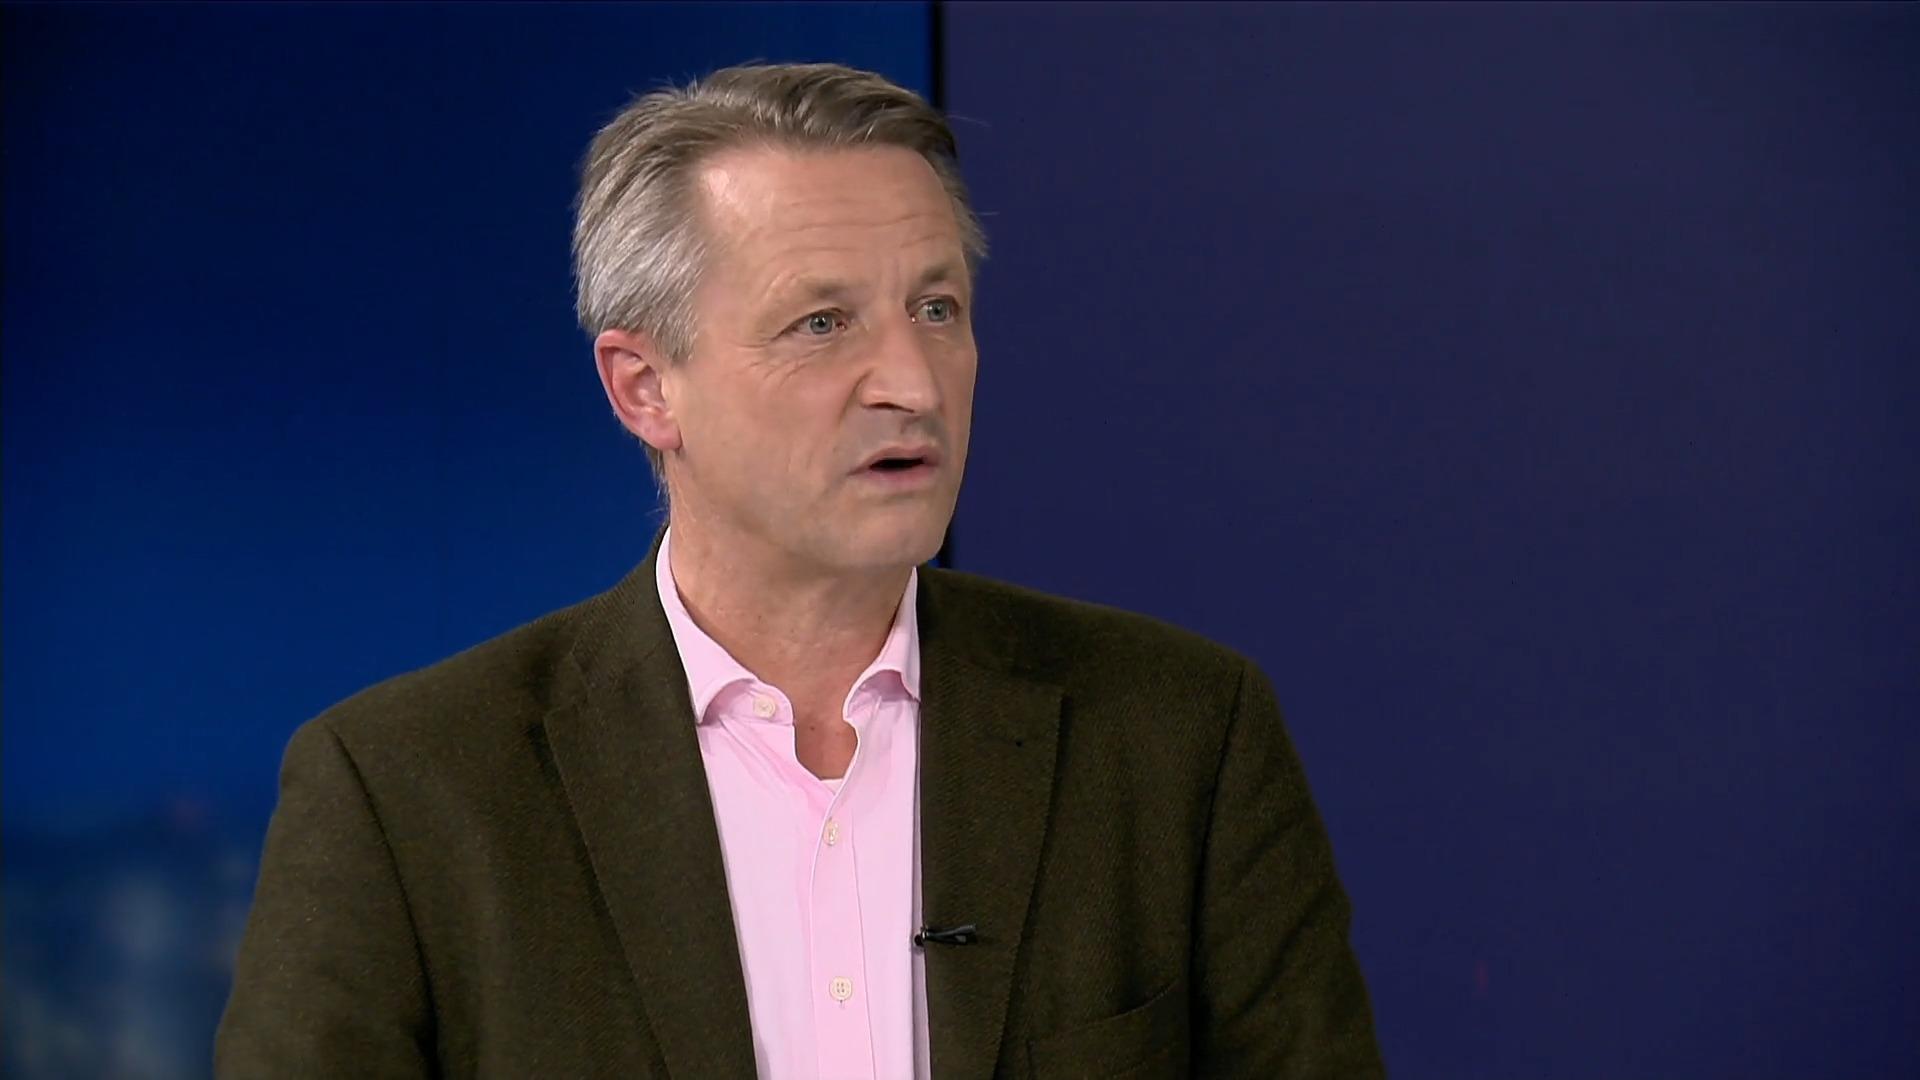 "Planbarkeit könnte den Menschen Sicherheit geben" RTL-Politikchef Nikolaus Blome